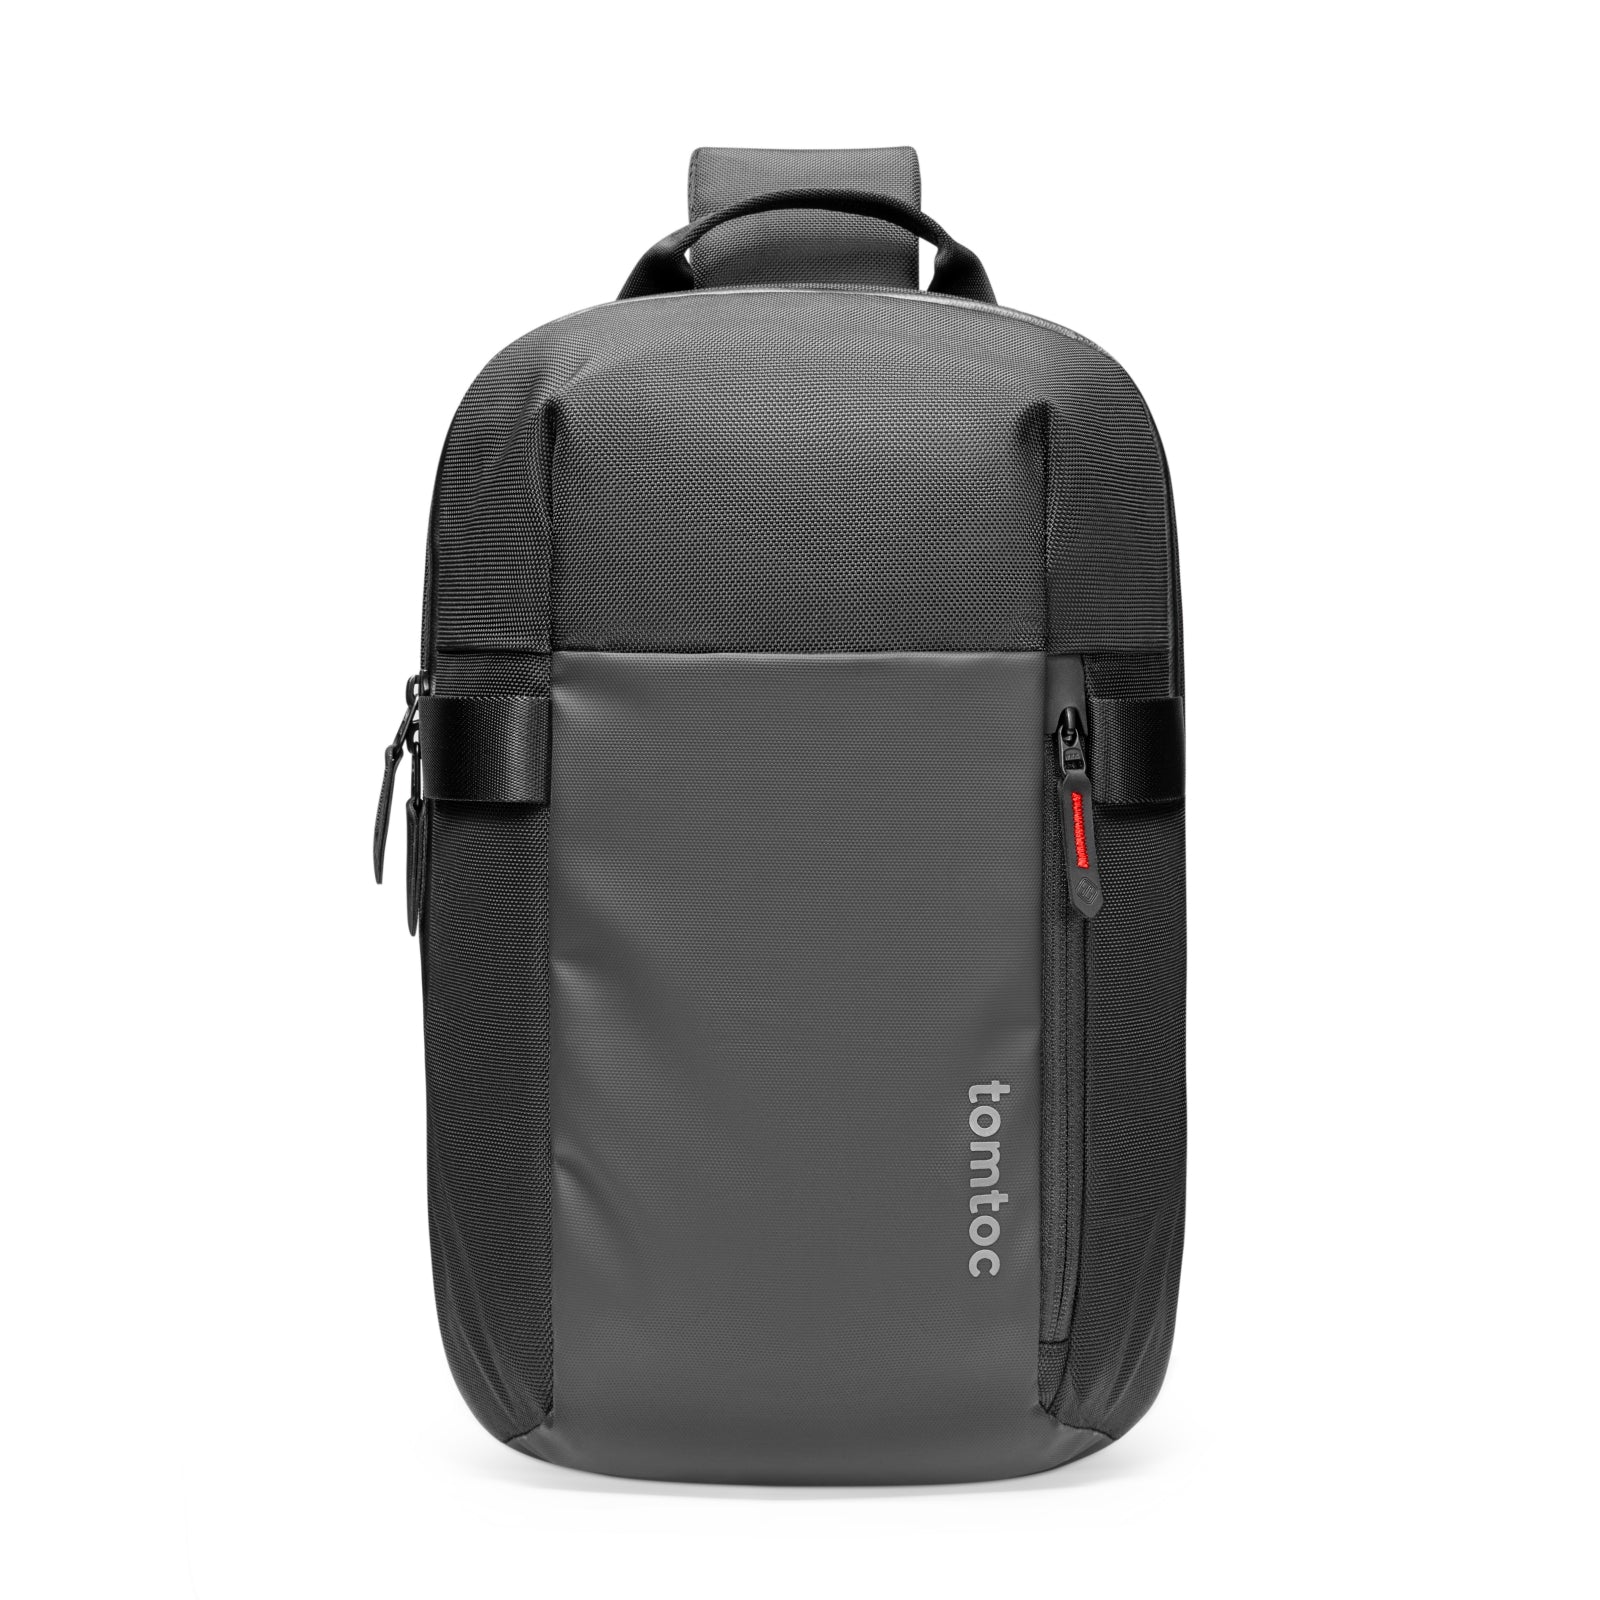 FFF postal service tri-sling backpack - バッグ